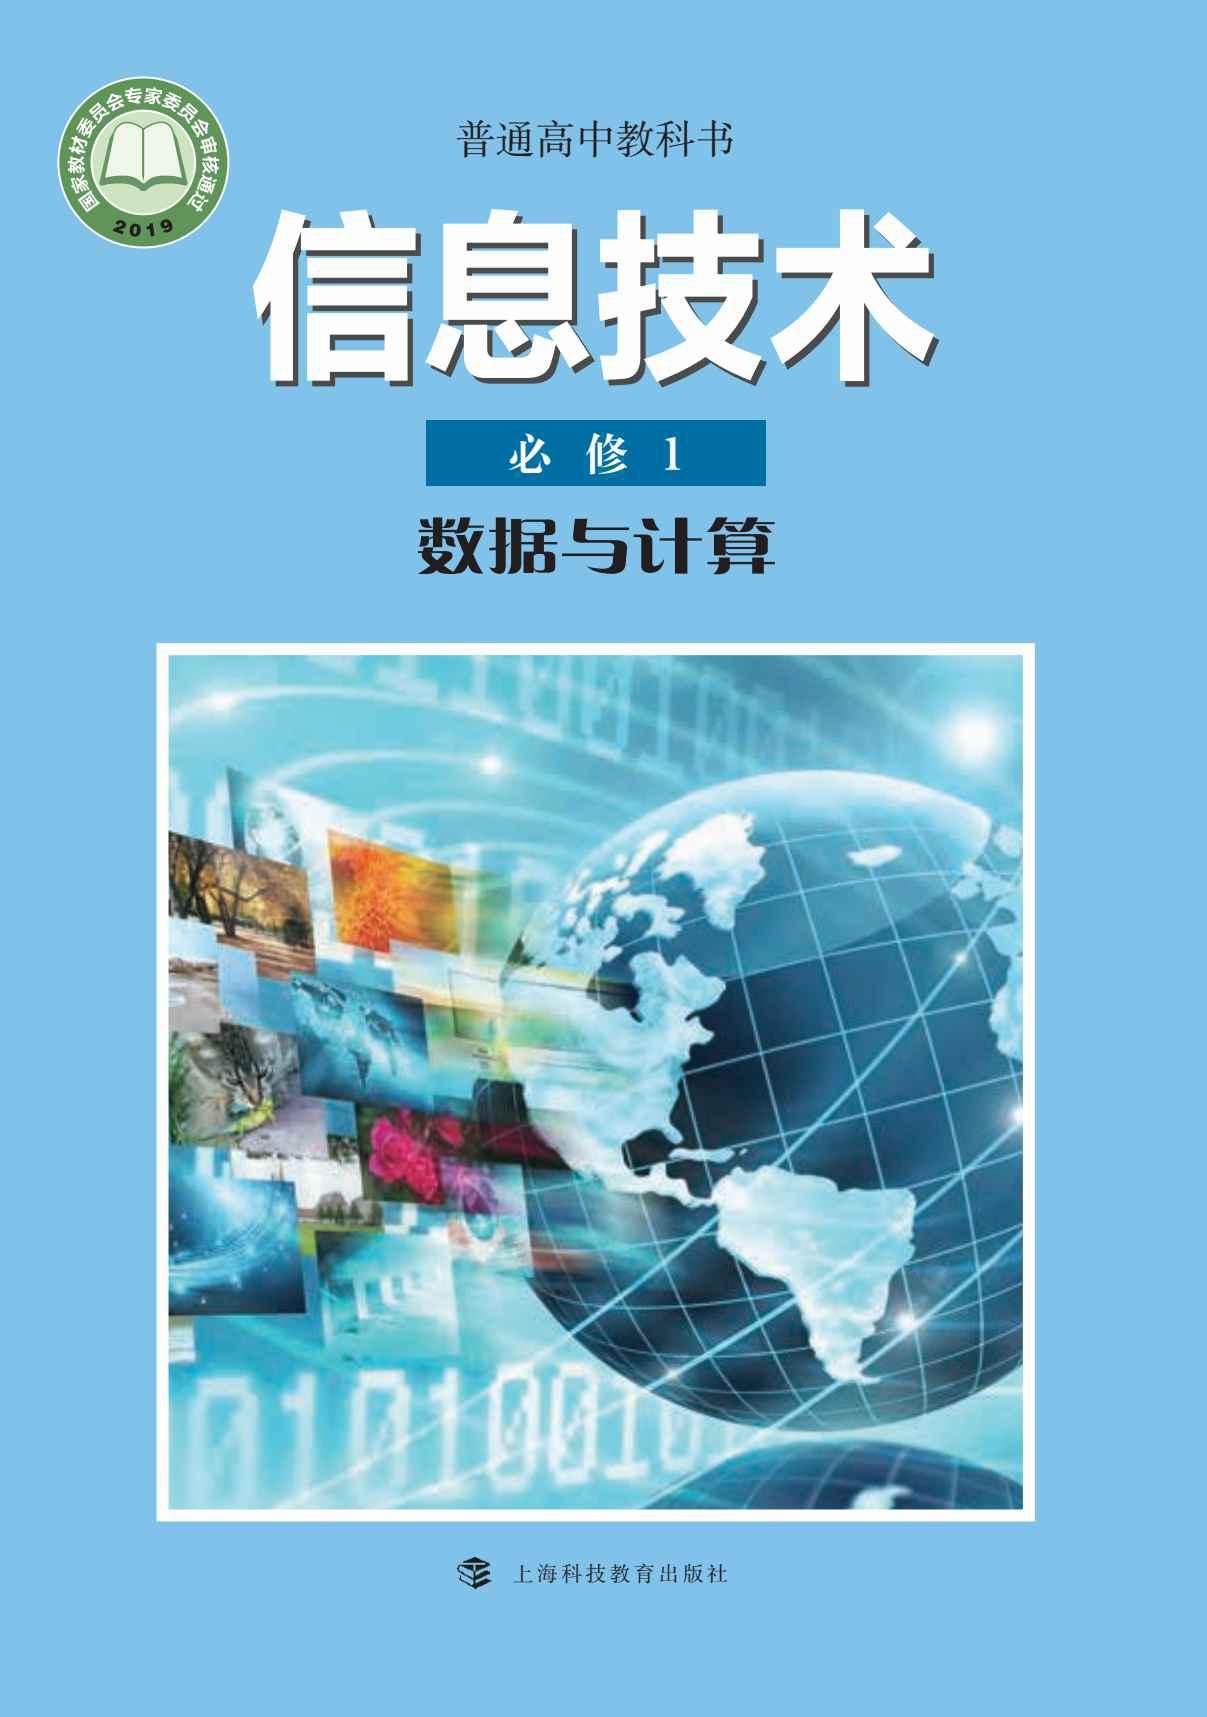 沪科教版高中123年级上下册学期信息技术电子版教材课本下载